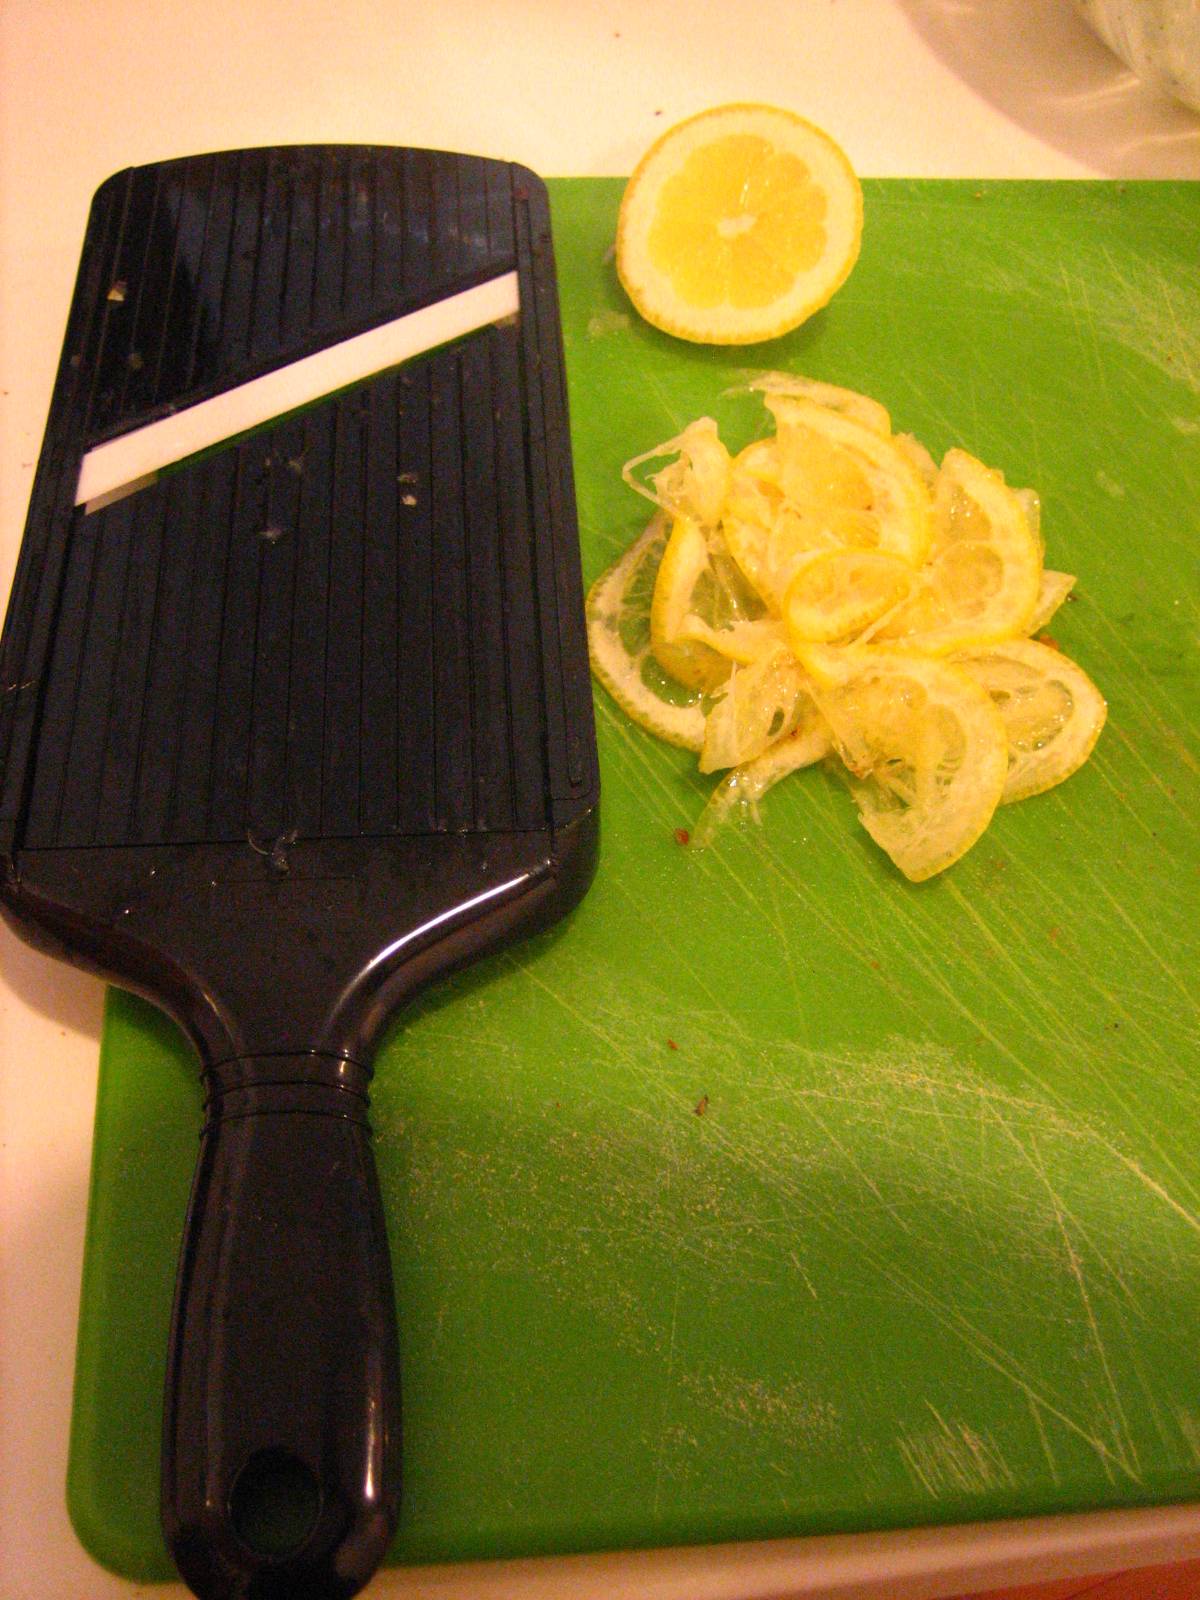 mise en place for lemon shavings